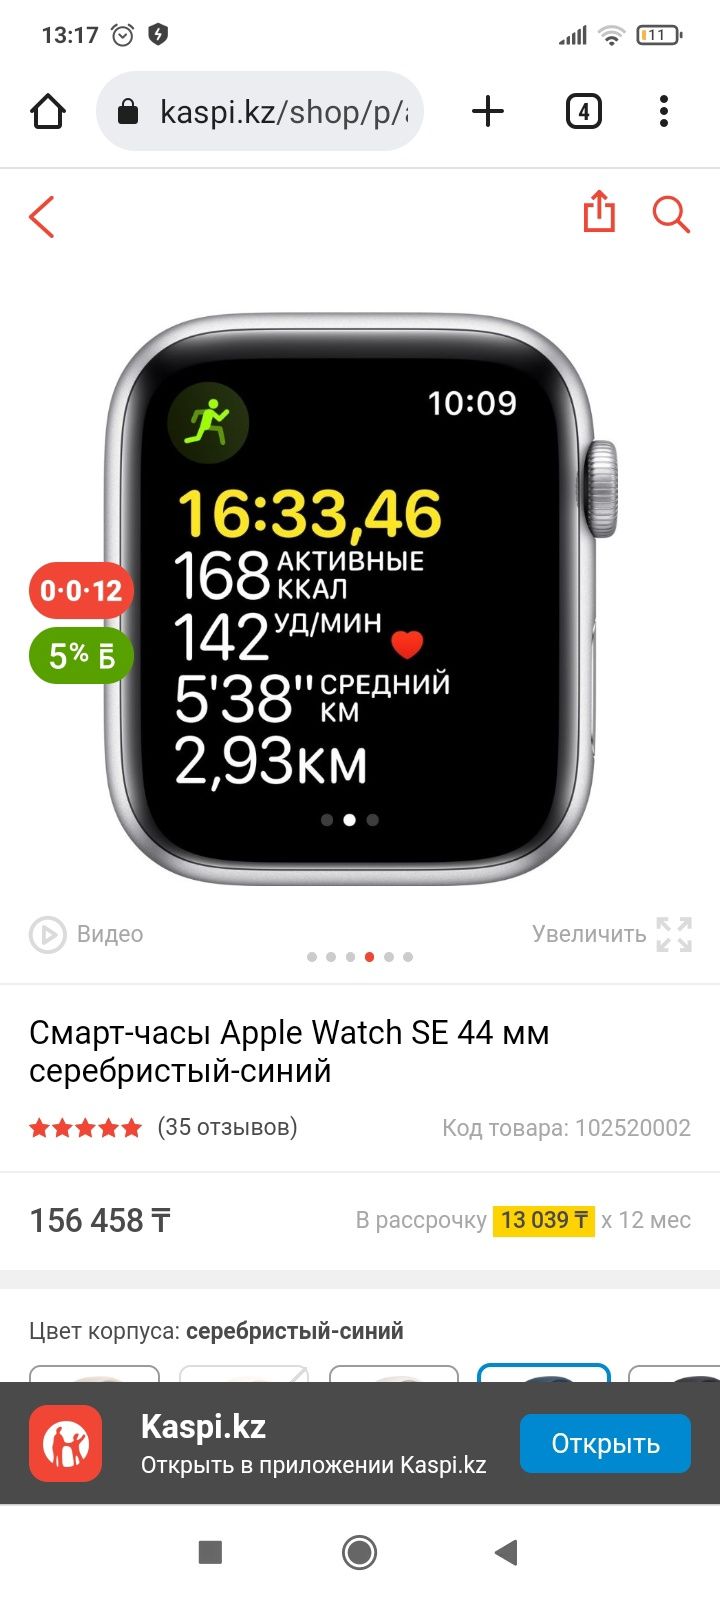 Apple watch Se 44 mm в хорошем состоянии